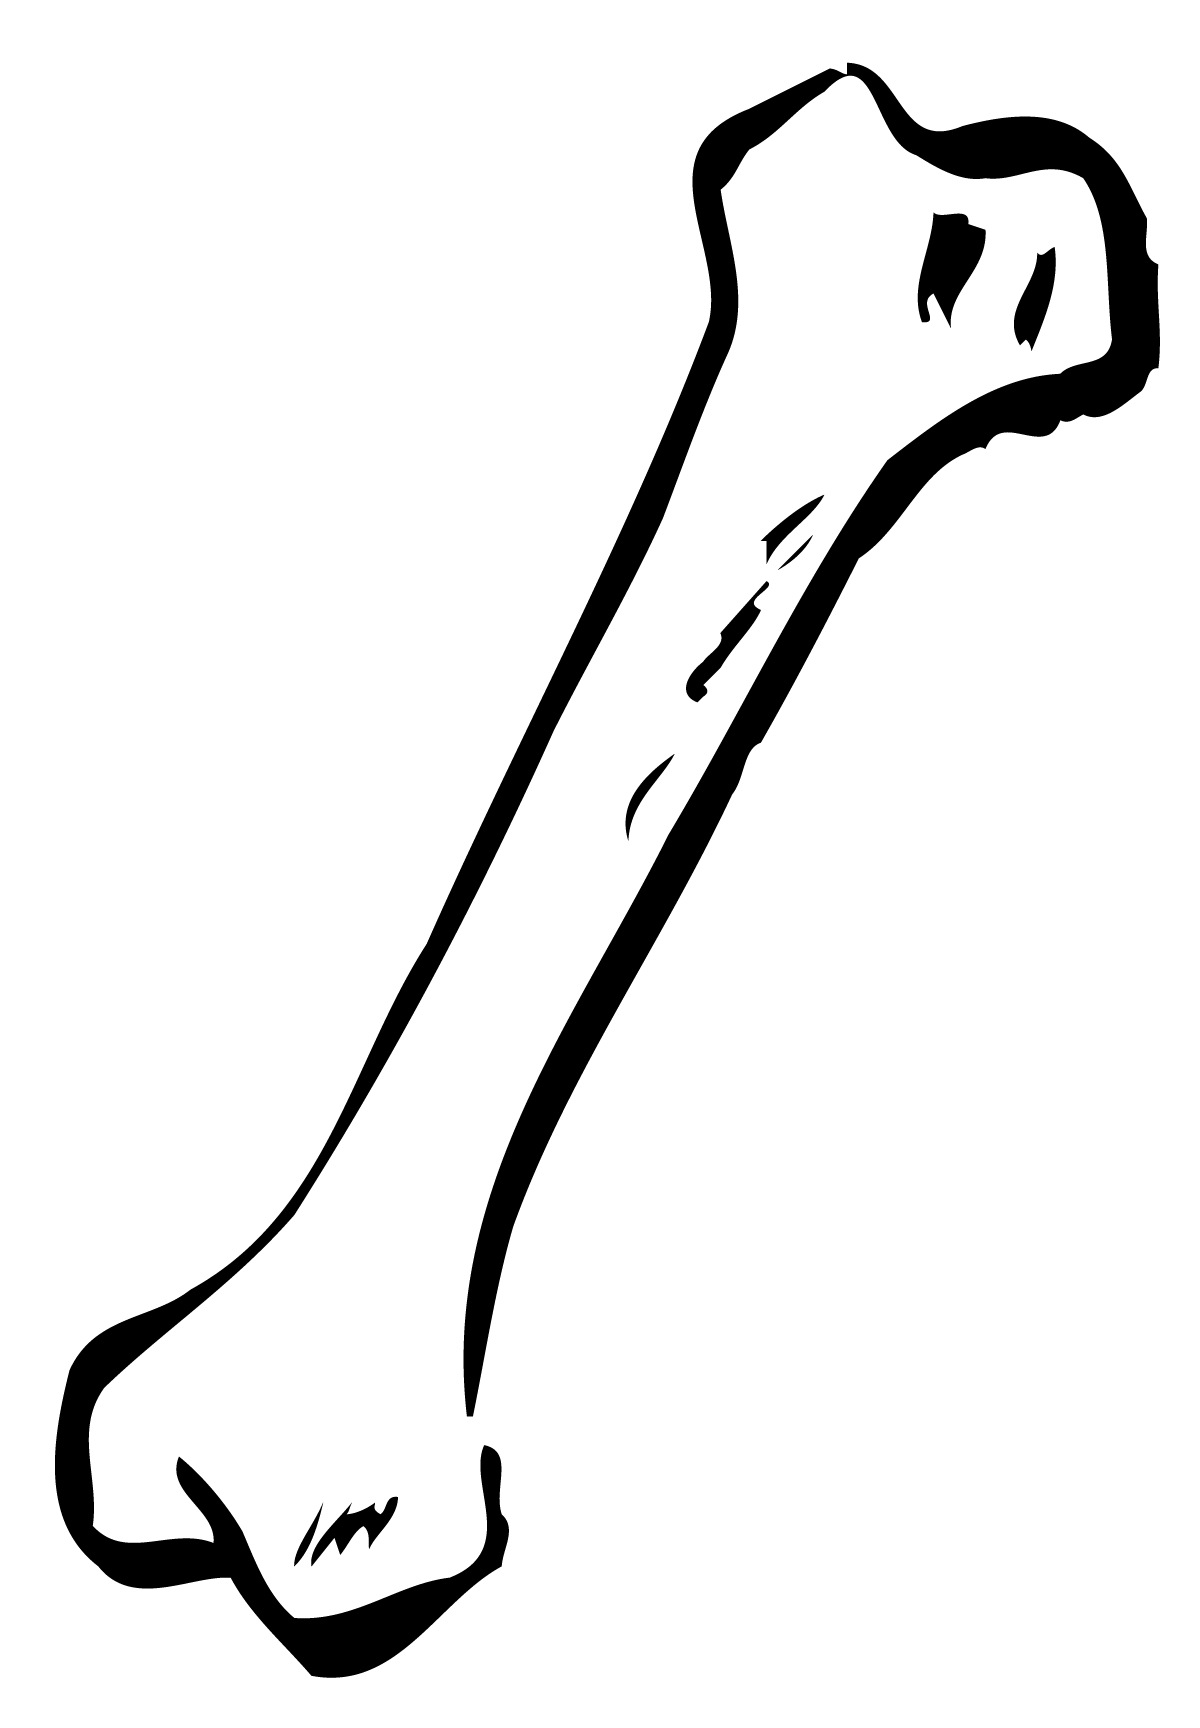 Legs clipart cartoon. Dog bone clip art